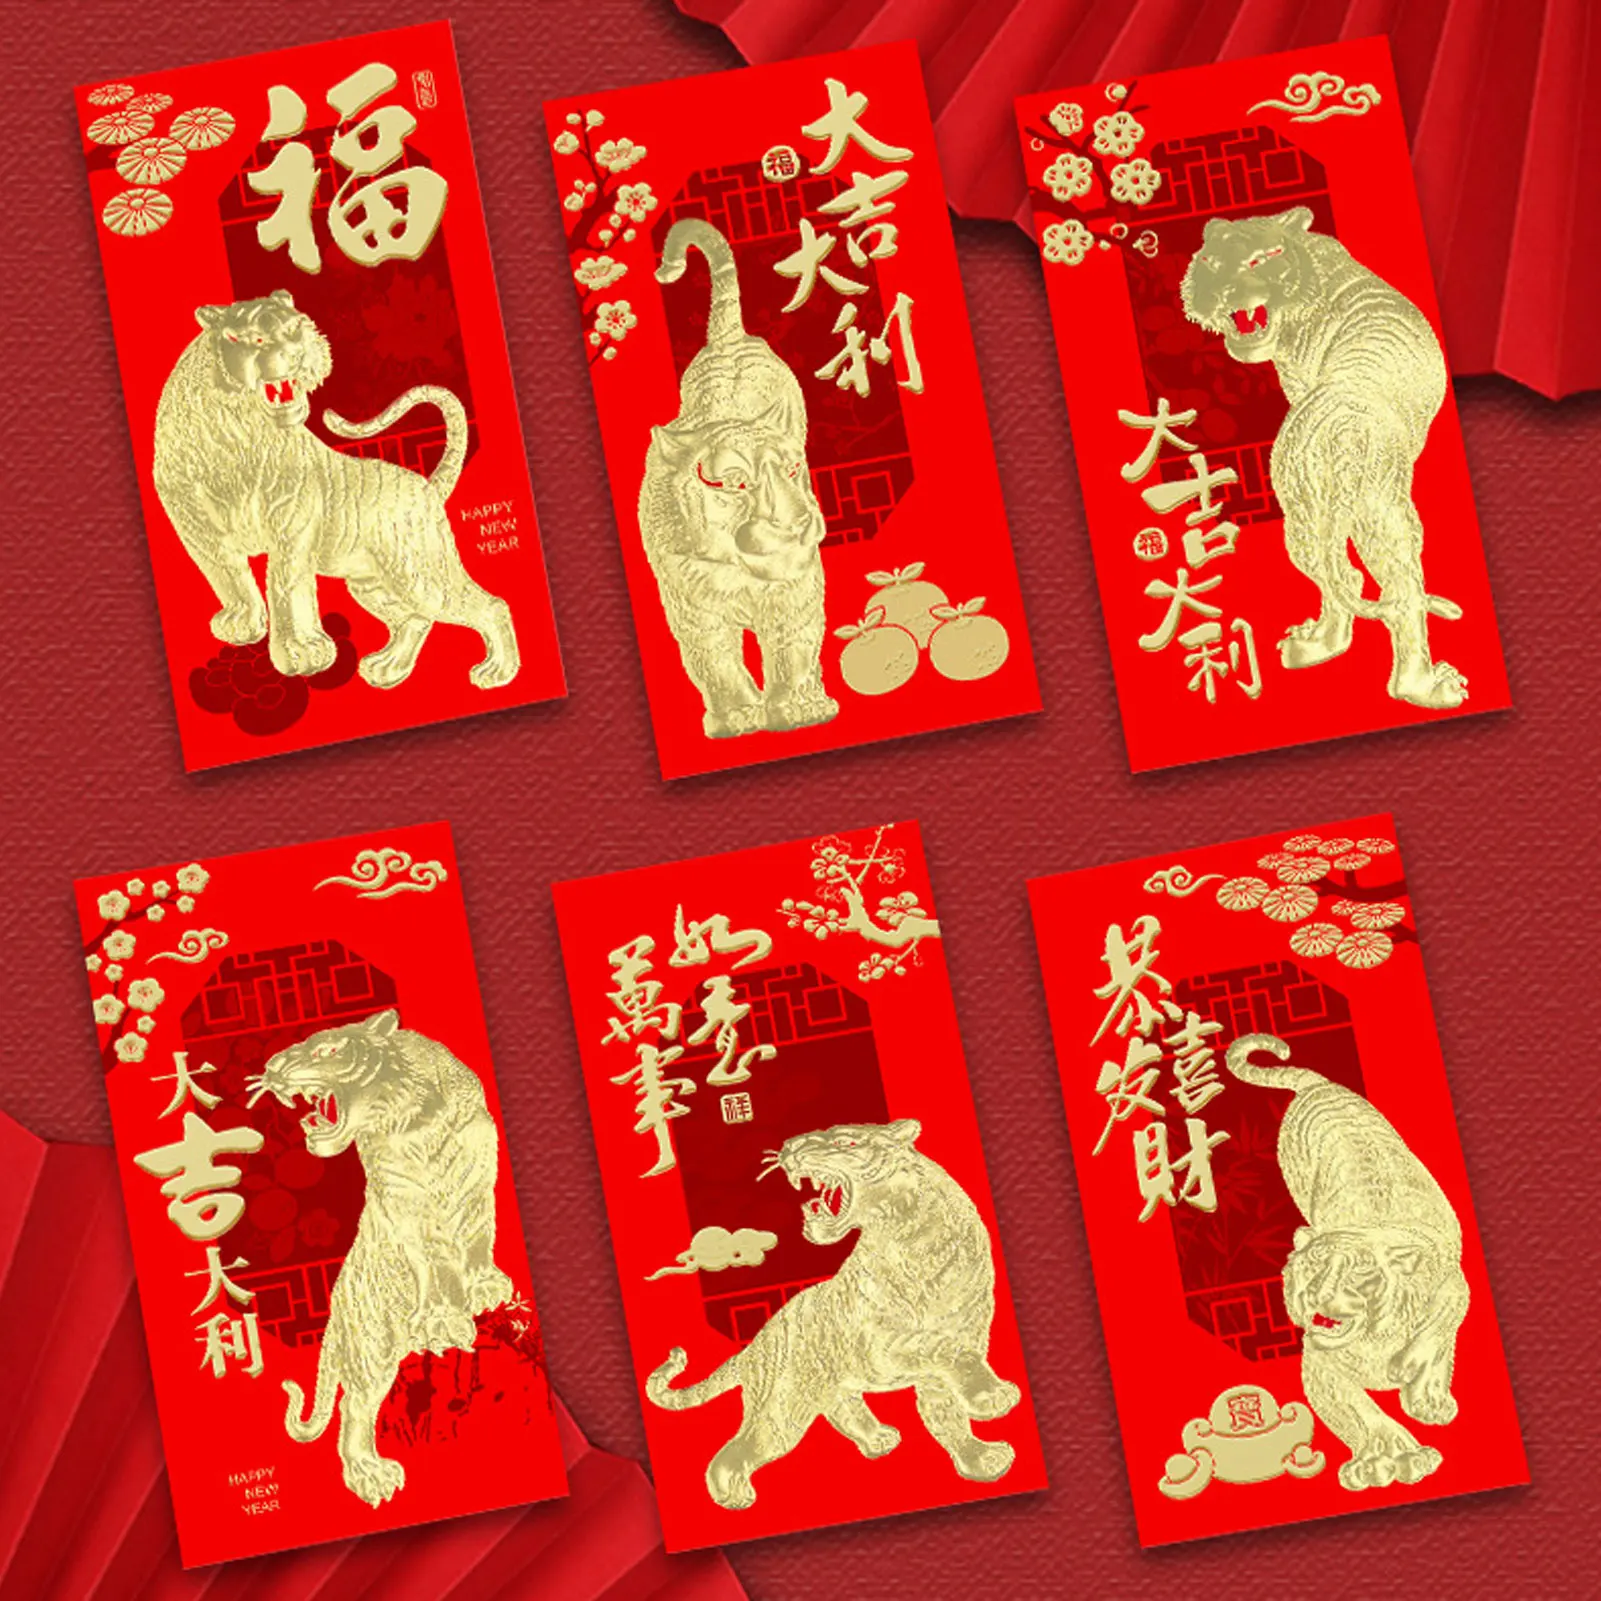 

6 шт., китайские красные конверты, 2022 год Тигра, Hong Bao, Мультяшные пакеты для денег на удачу с тисненым рисунком для праздника Весны